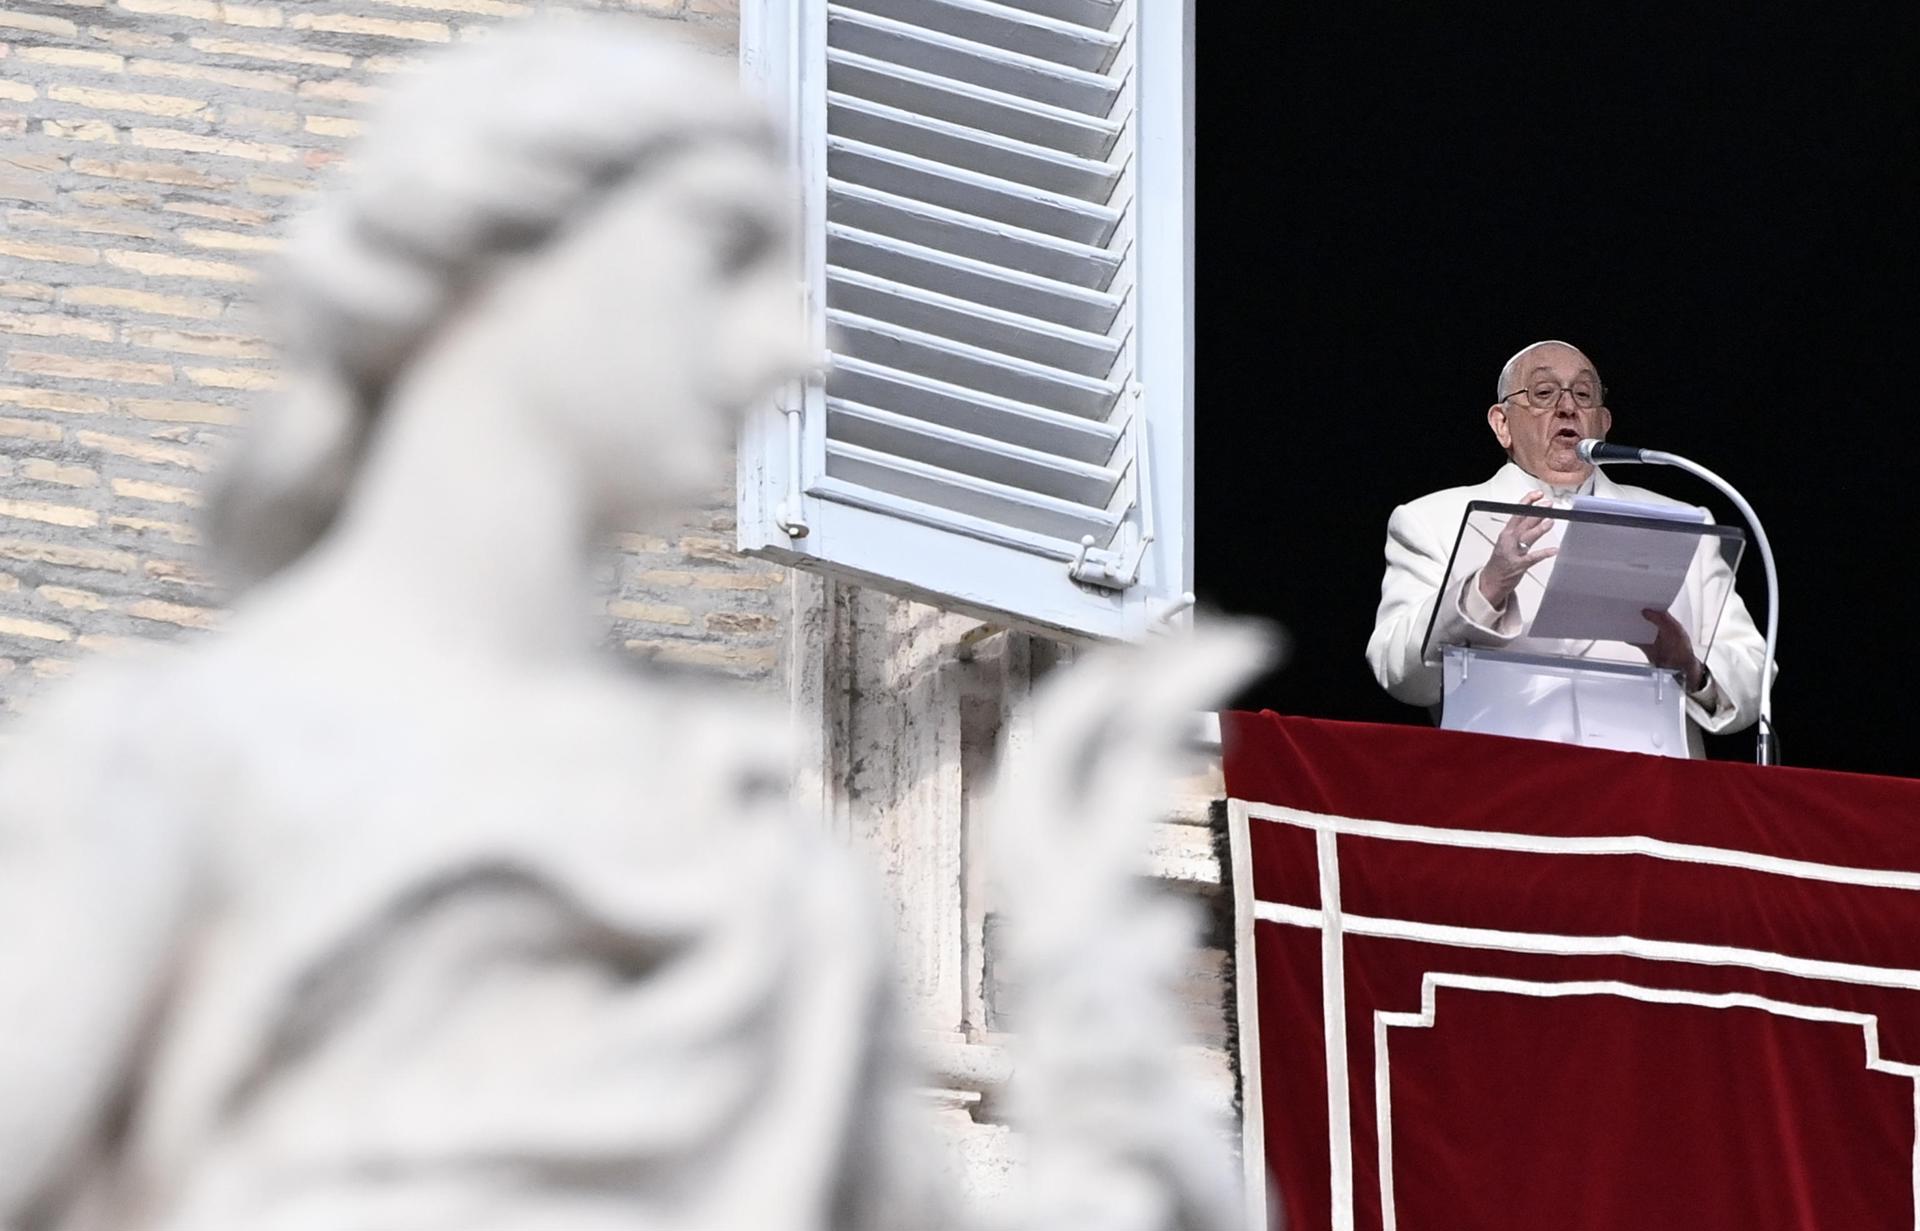 El Papa pide que se reanuden negociaciones para un cese al fuego y se liberen los rehenes